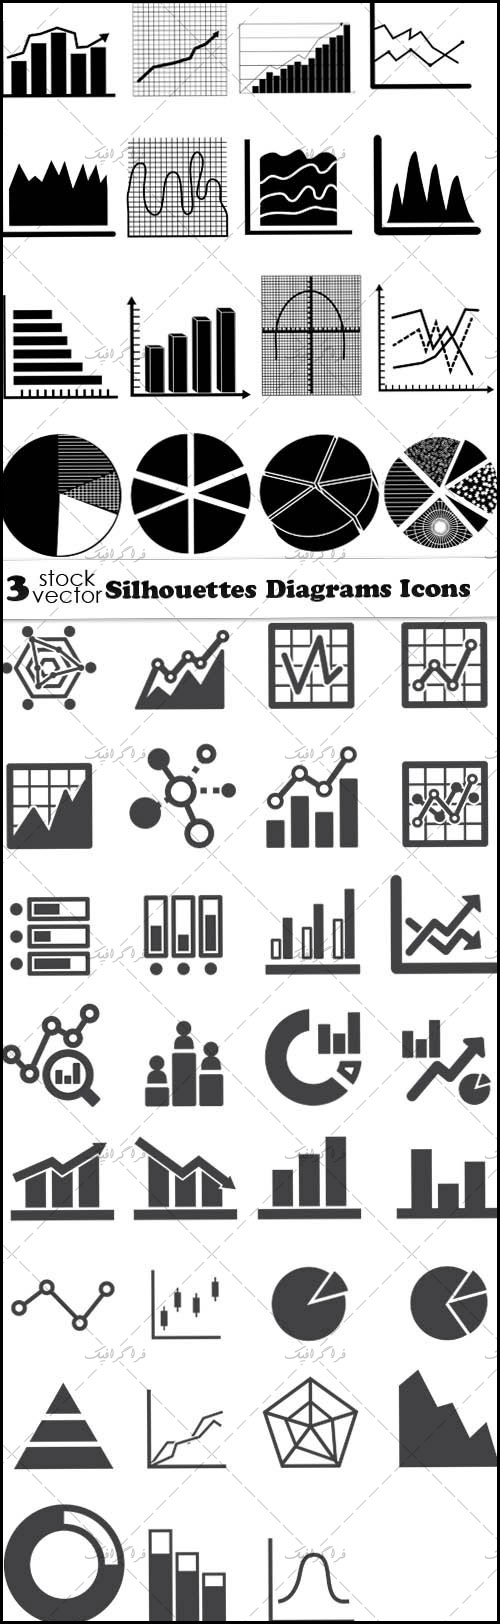 دانلود آیکون های نمودار Diagram Icons - شماره 3